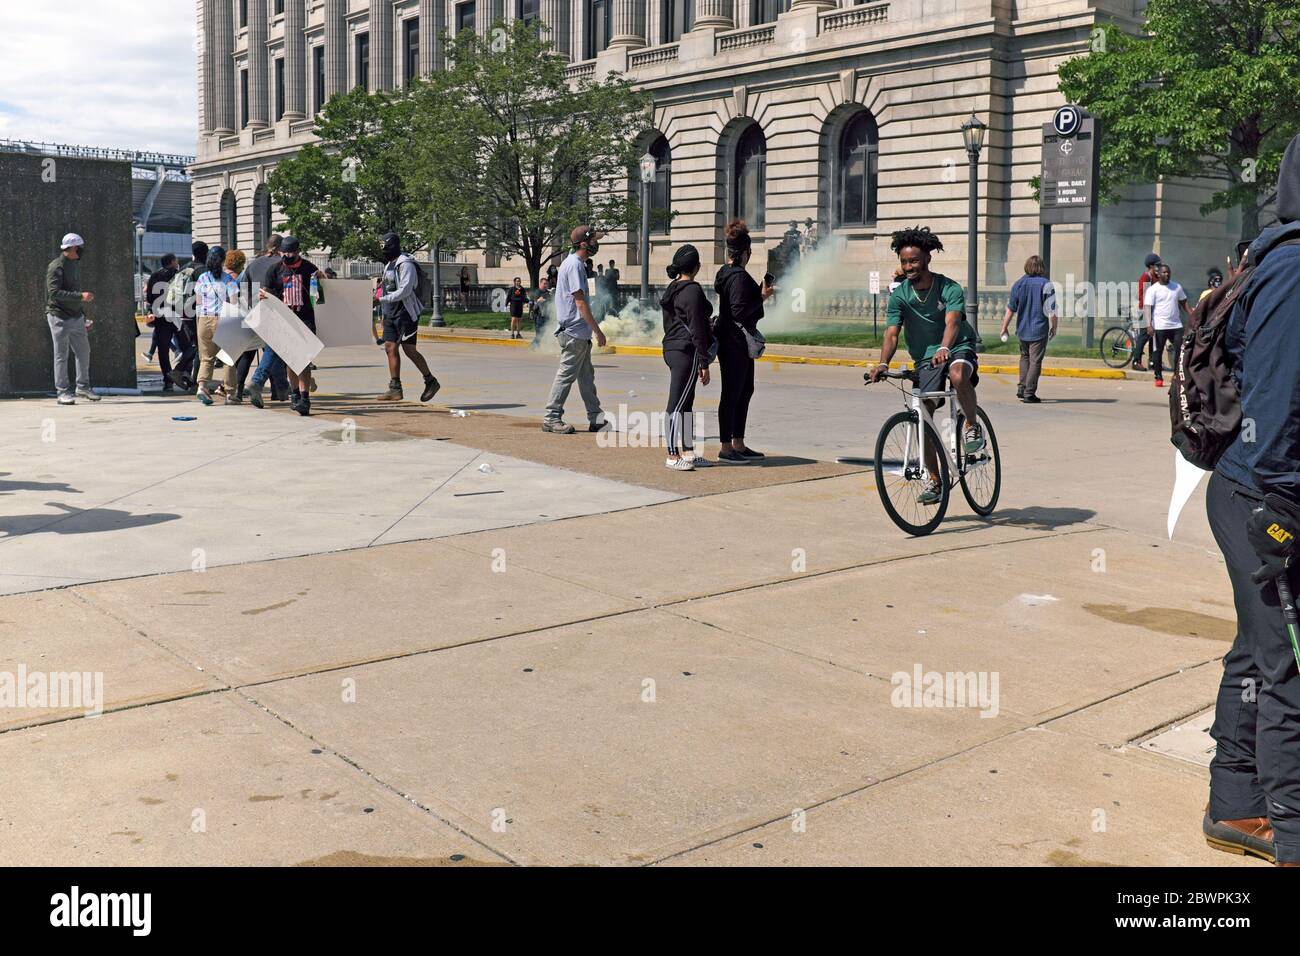 Un homme passe son vélo à travers les manifestants comme une bombe à gaz lacrymogène tirée par la police qui a frappé à proximité à Cleveland, Ohio, lors d'une manifestation de Black Lives Matter. Banque D'Images